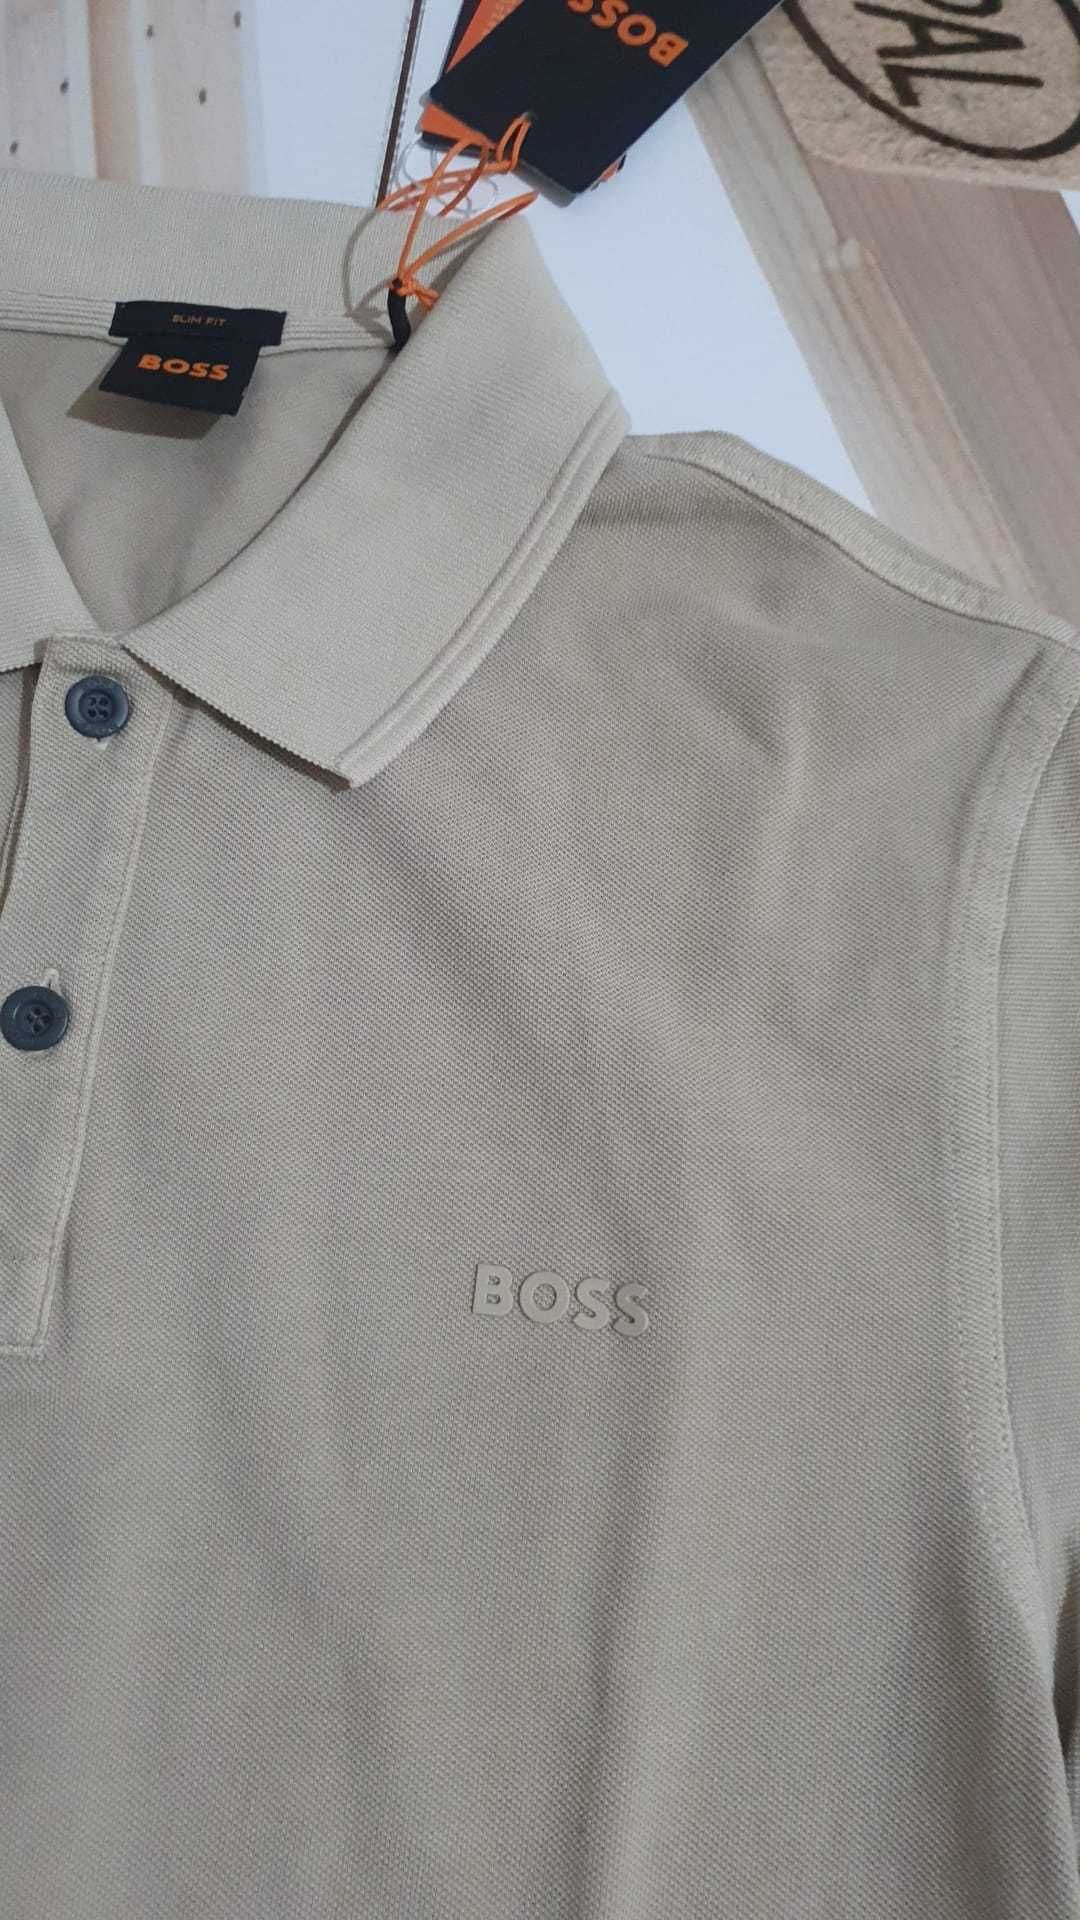 Vand tricou barbat Hugo Boss masura XL original nou cu eticheta